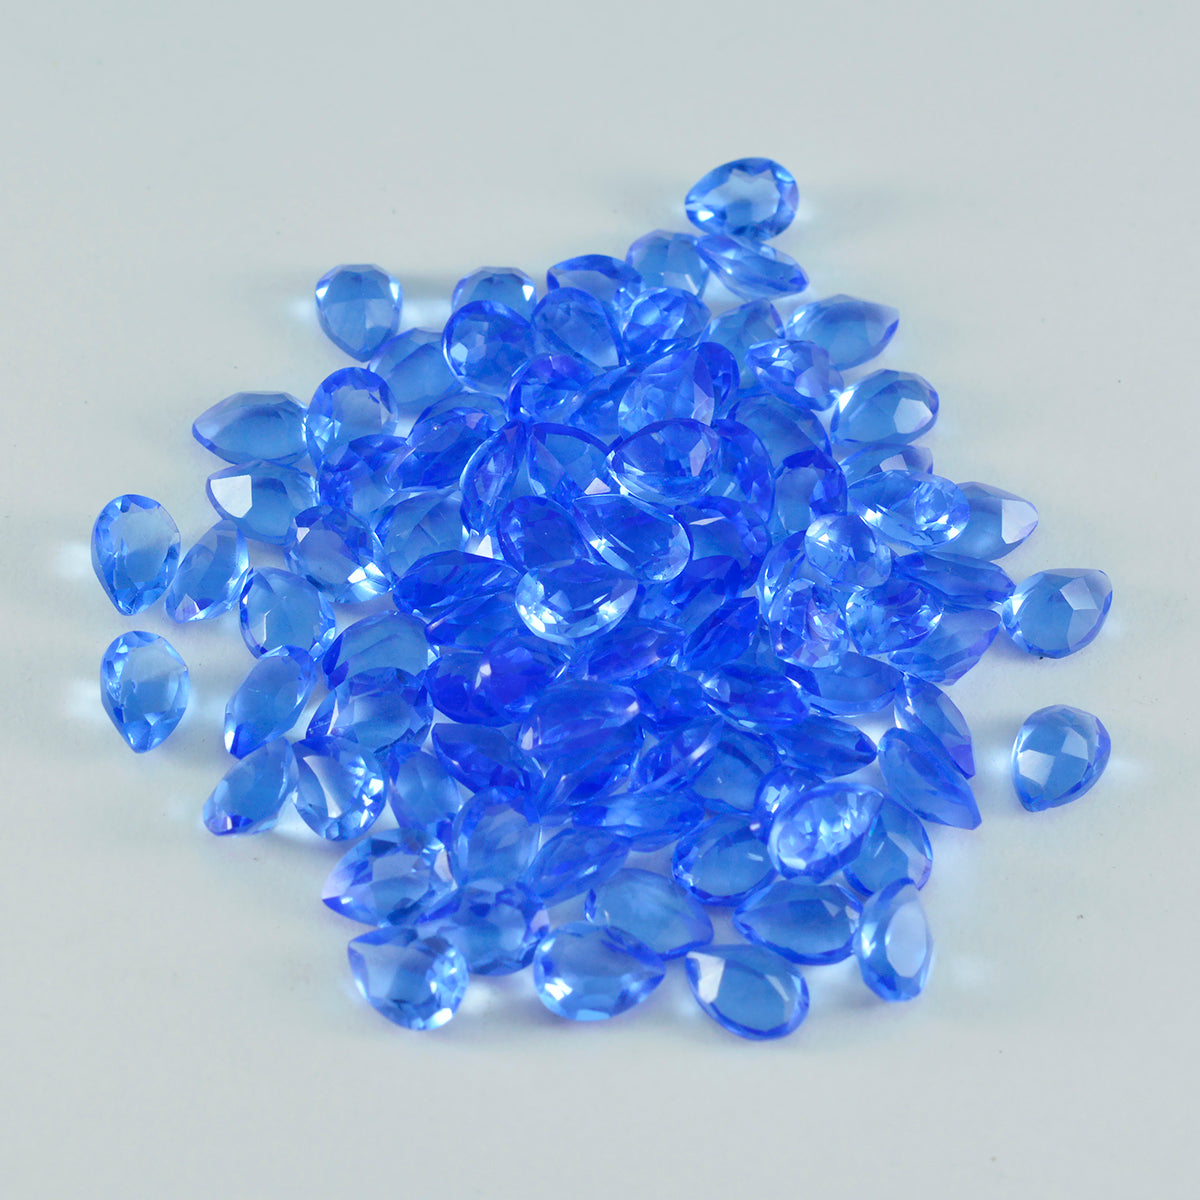 Riyogems 1 pieza zafiro azul CZ facetado 4x6 mm forma de pera gema de calidad atractiva